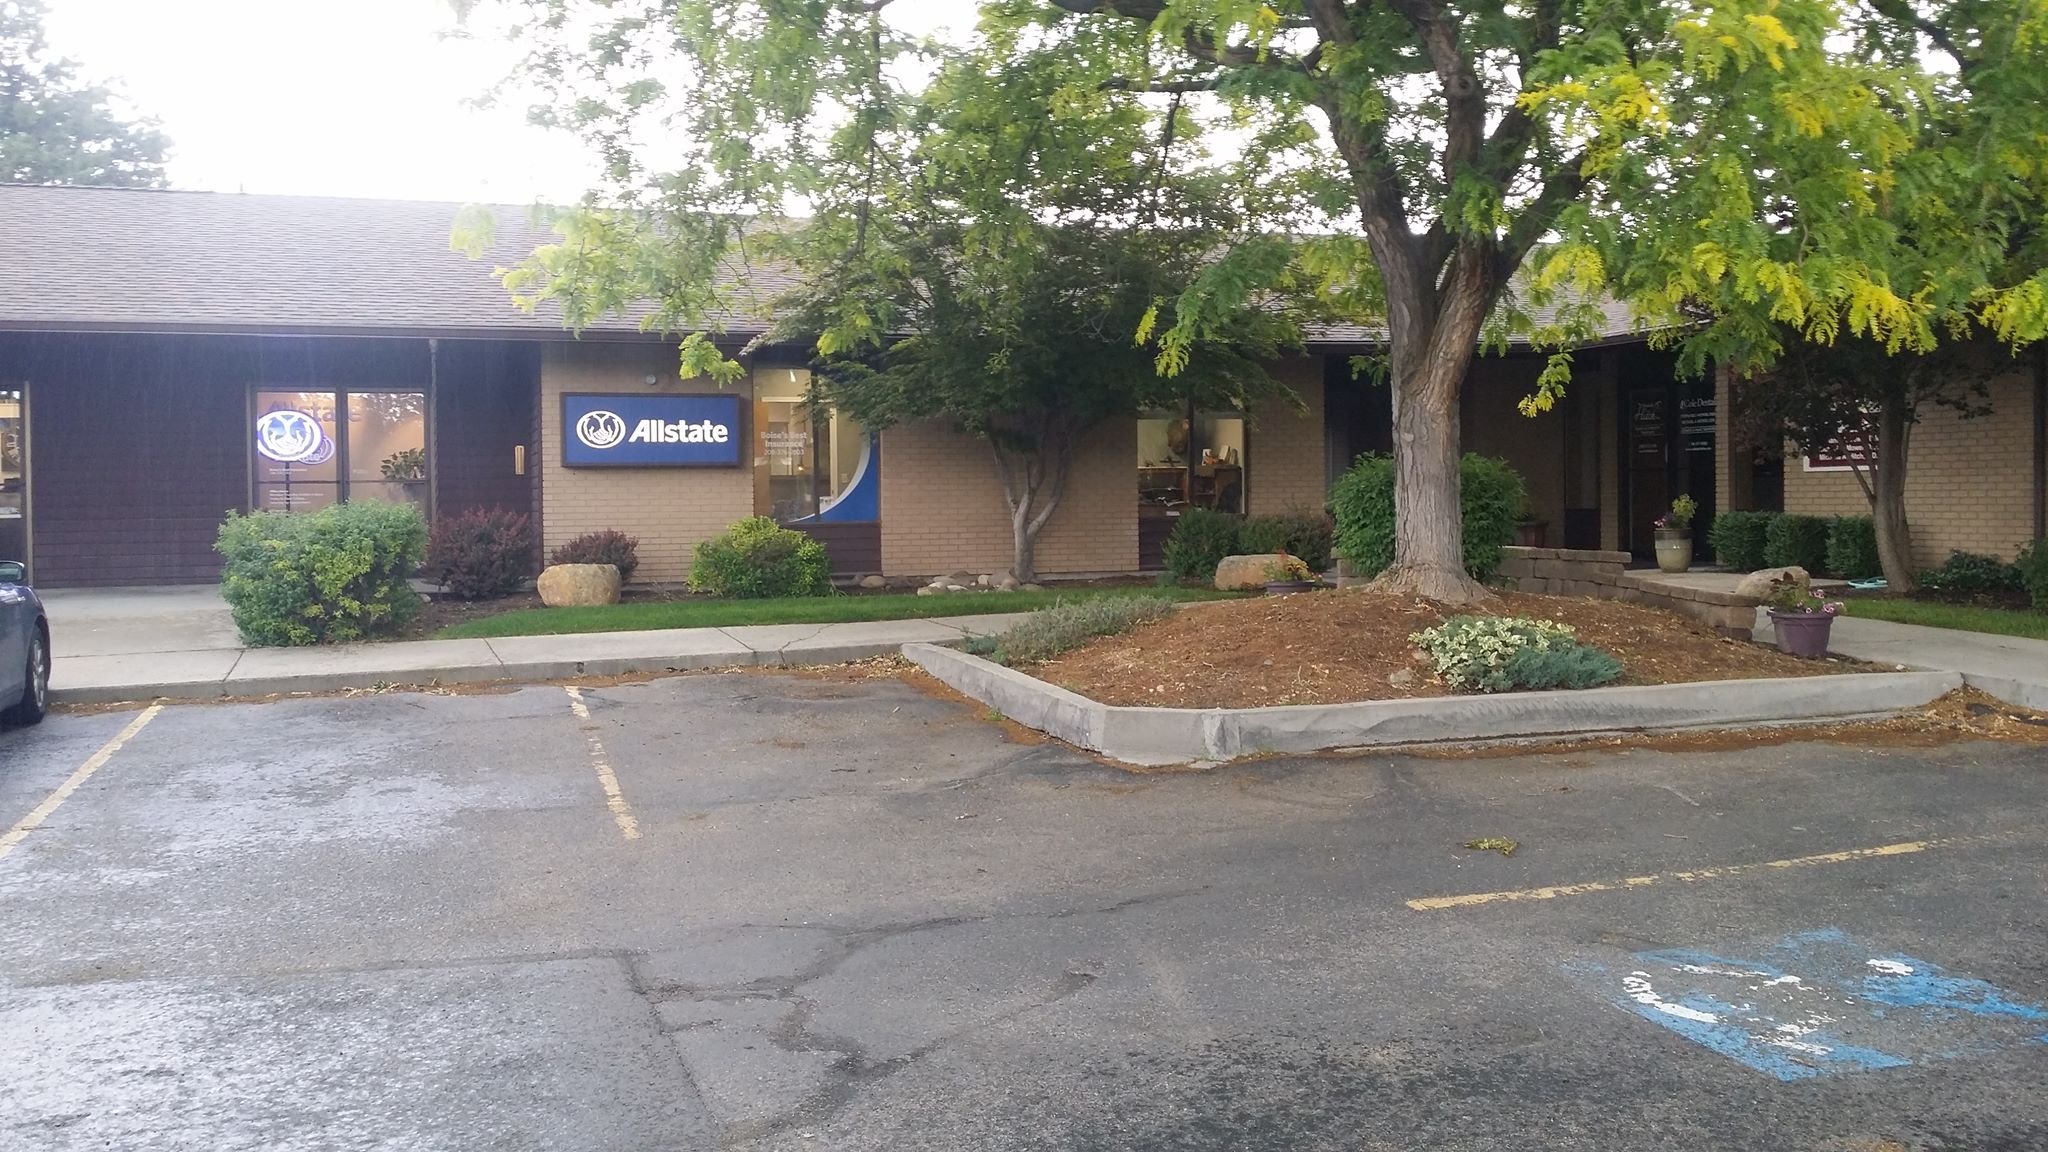 Allstate | Car Insurance in Boise, ID - Sandra Spreier